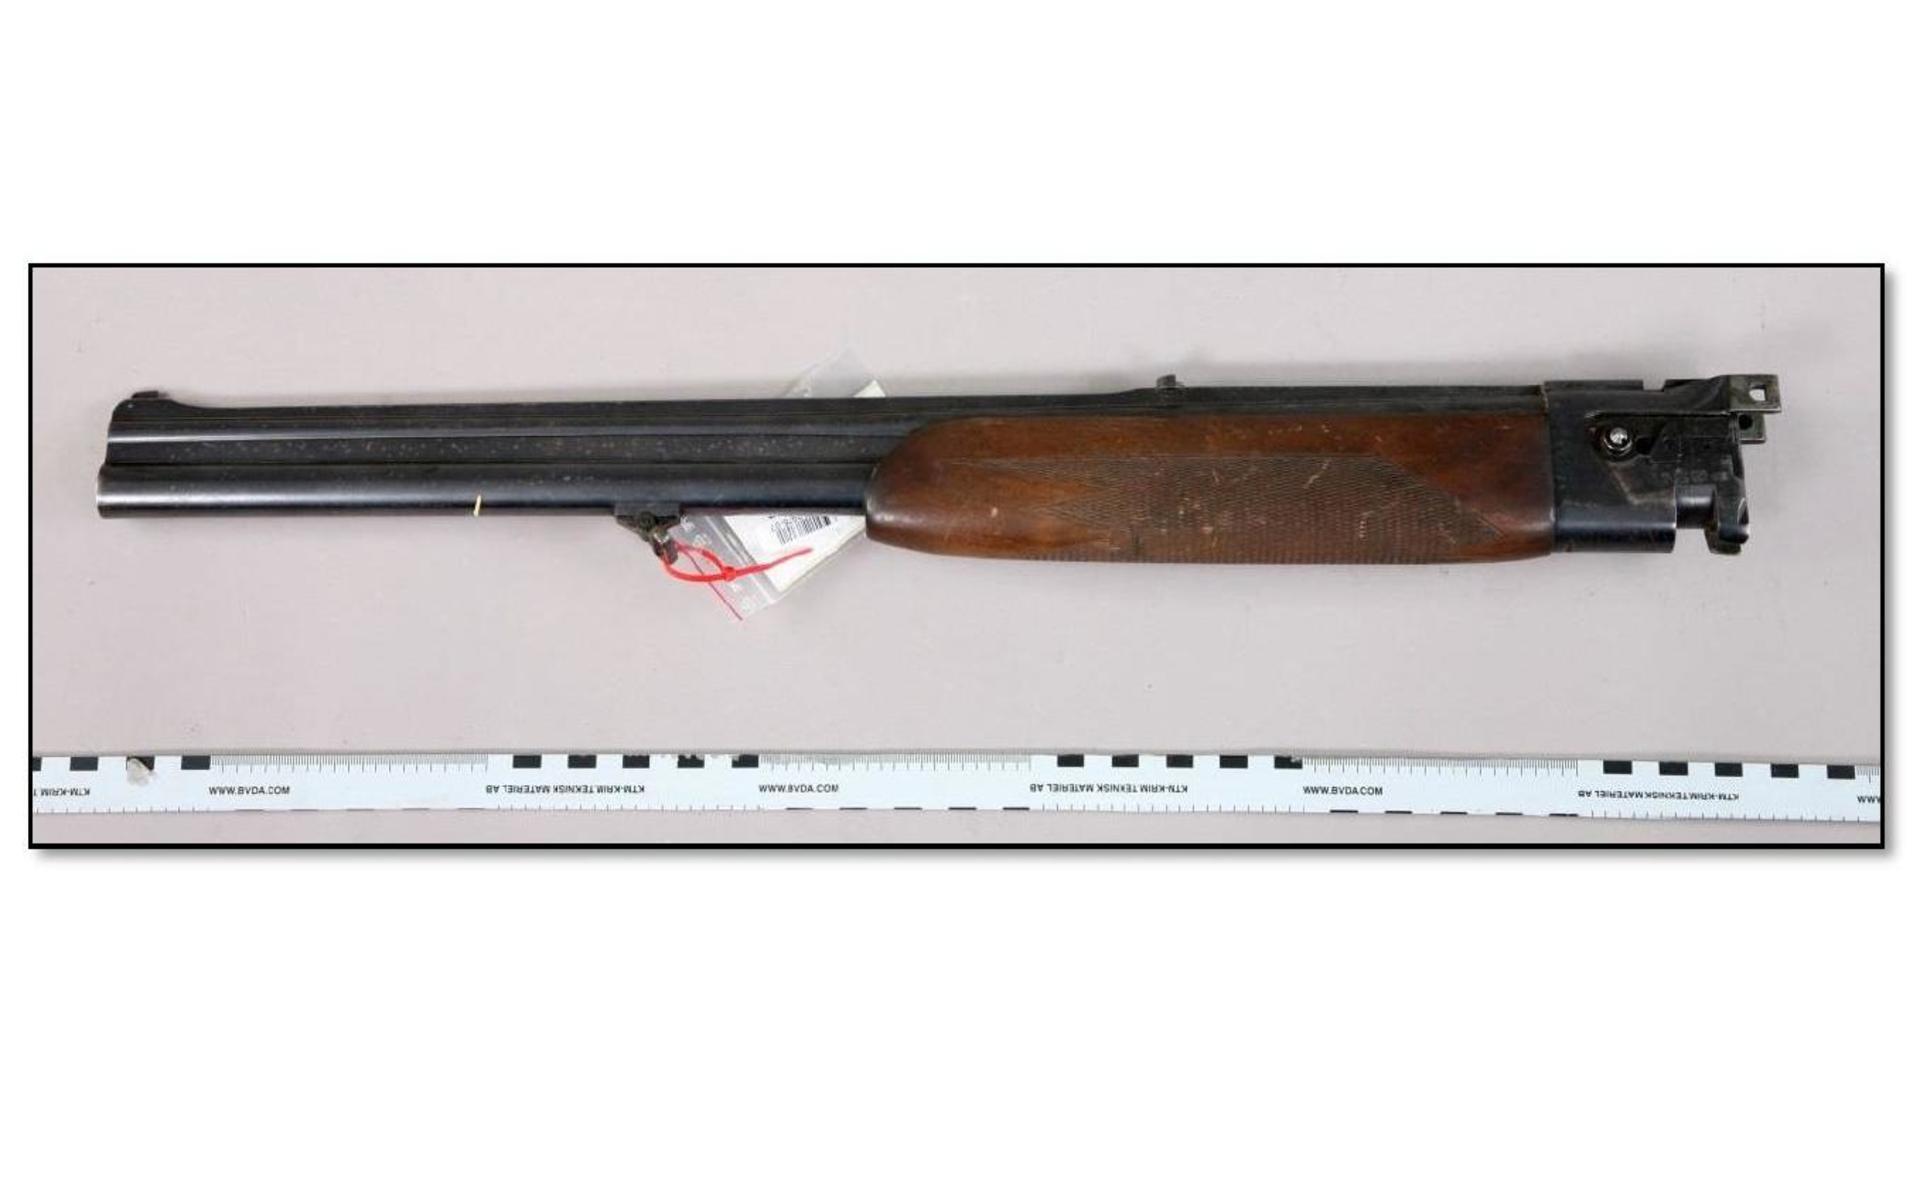 Ett pipset i kaliber 12-70 till ett hagelgevär av bockmodell. Pipsetet omfattas av vapenlagen och jämställs med skjutvapen. Bild: Polisen